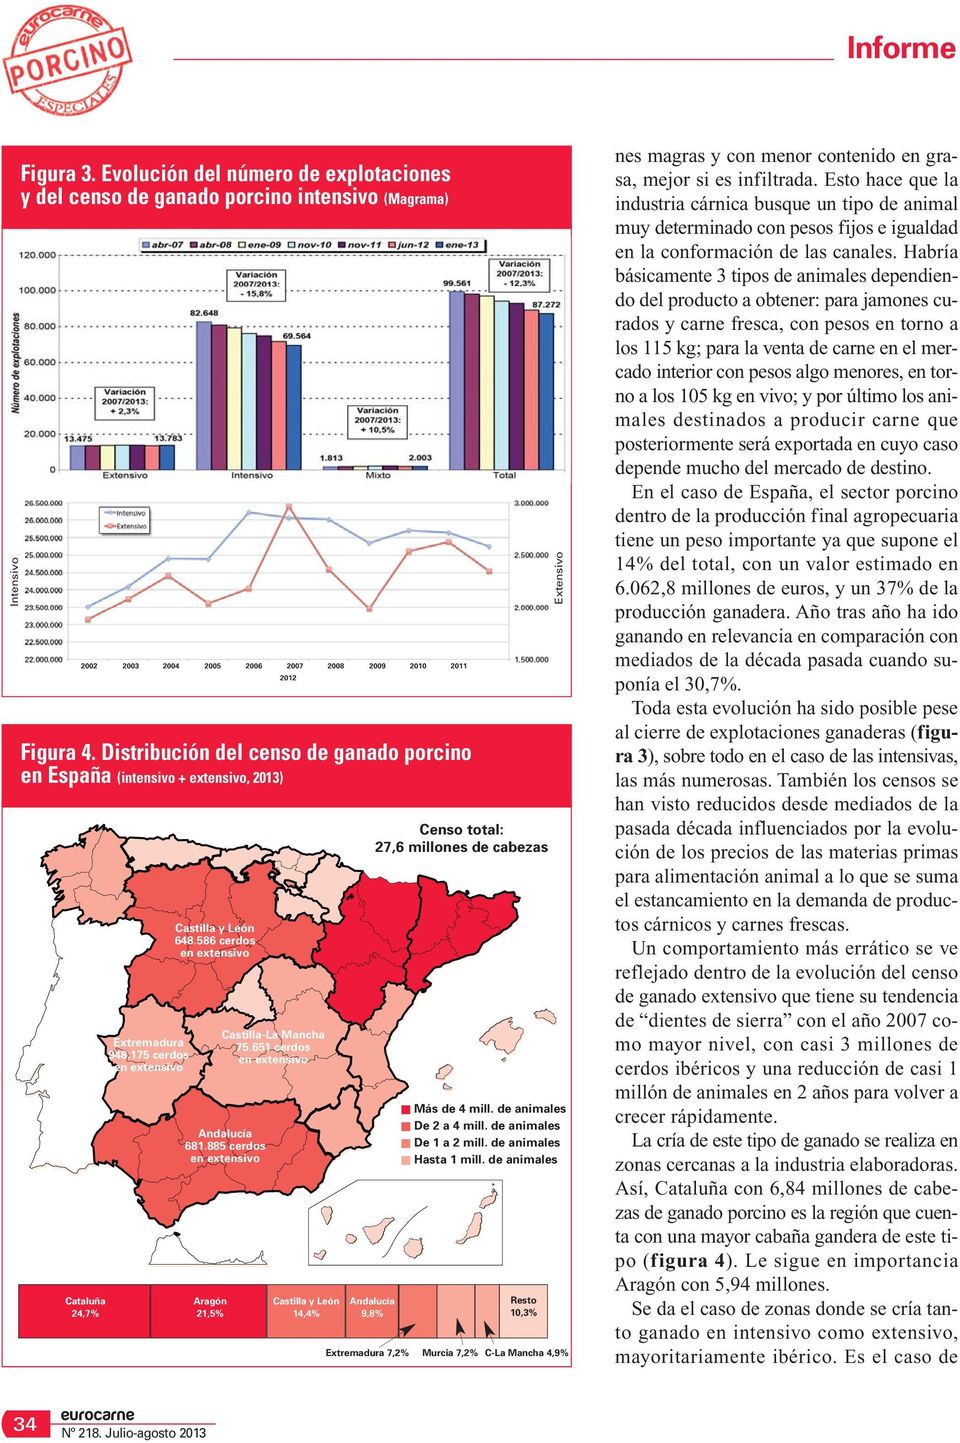 885 cerdos en extensivo Aragón 21,5% Castilla-La Mancha 75.651 cerdos en extensivo Castilla y León 14,4% Censo total: 27,6 millones de cabezas Andalucía 9,8% Más de 4 mill. de animales De 2 a 4 mill.